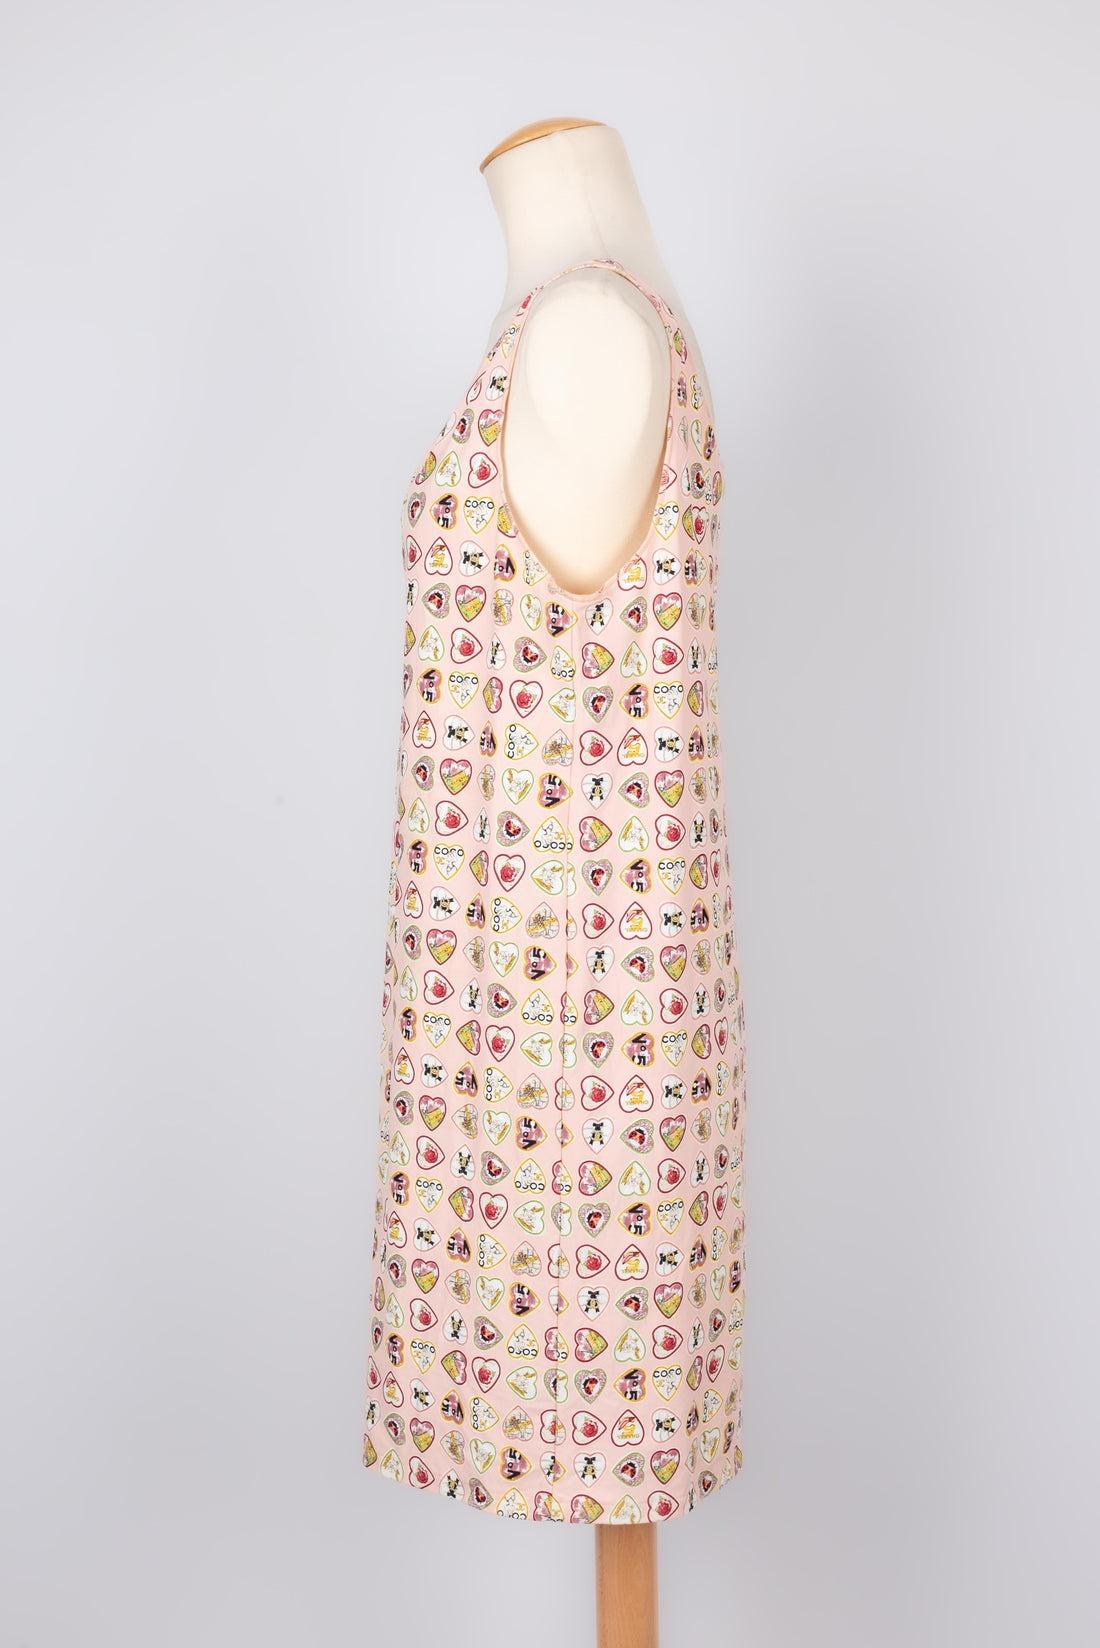 Chanel - (Made in France) Mit Herzen bedrucktes Kleid auf rosa Hintergrund. Angegebene Größe 44FR. Collection'S 2006.

Zusätzliche Informationen:
Zustand: Sehr guter Zustand
Abmessungen: Brustkorb: 50 cm - Länge: 90 cm

Sellers Referenz: VR35